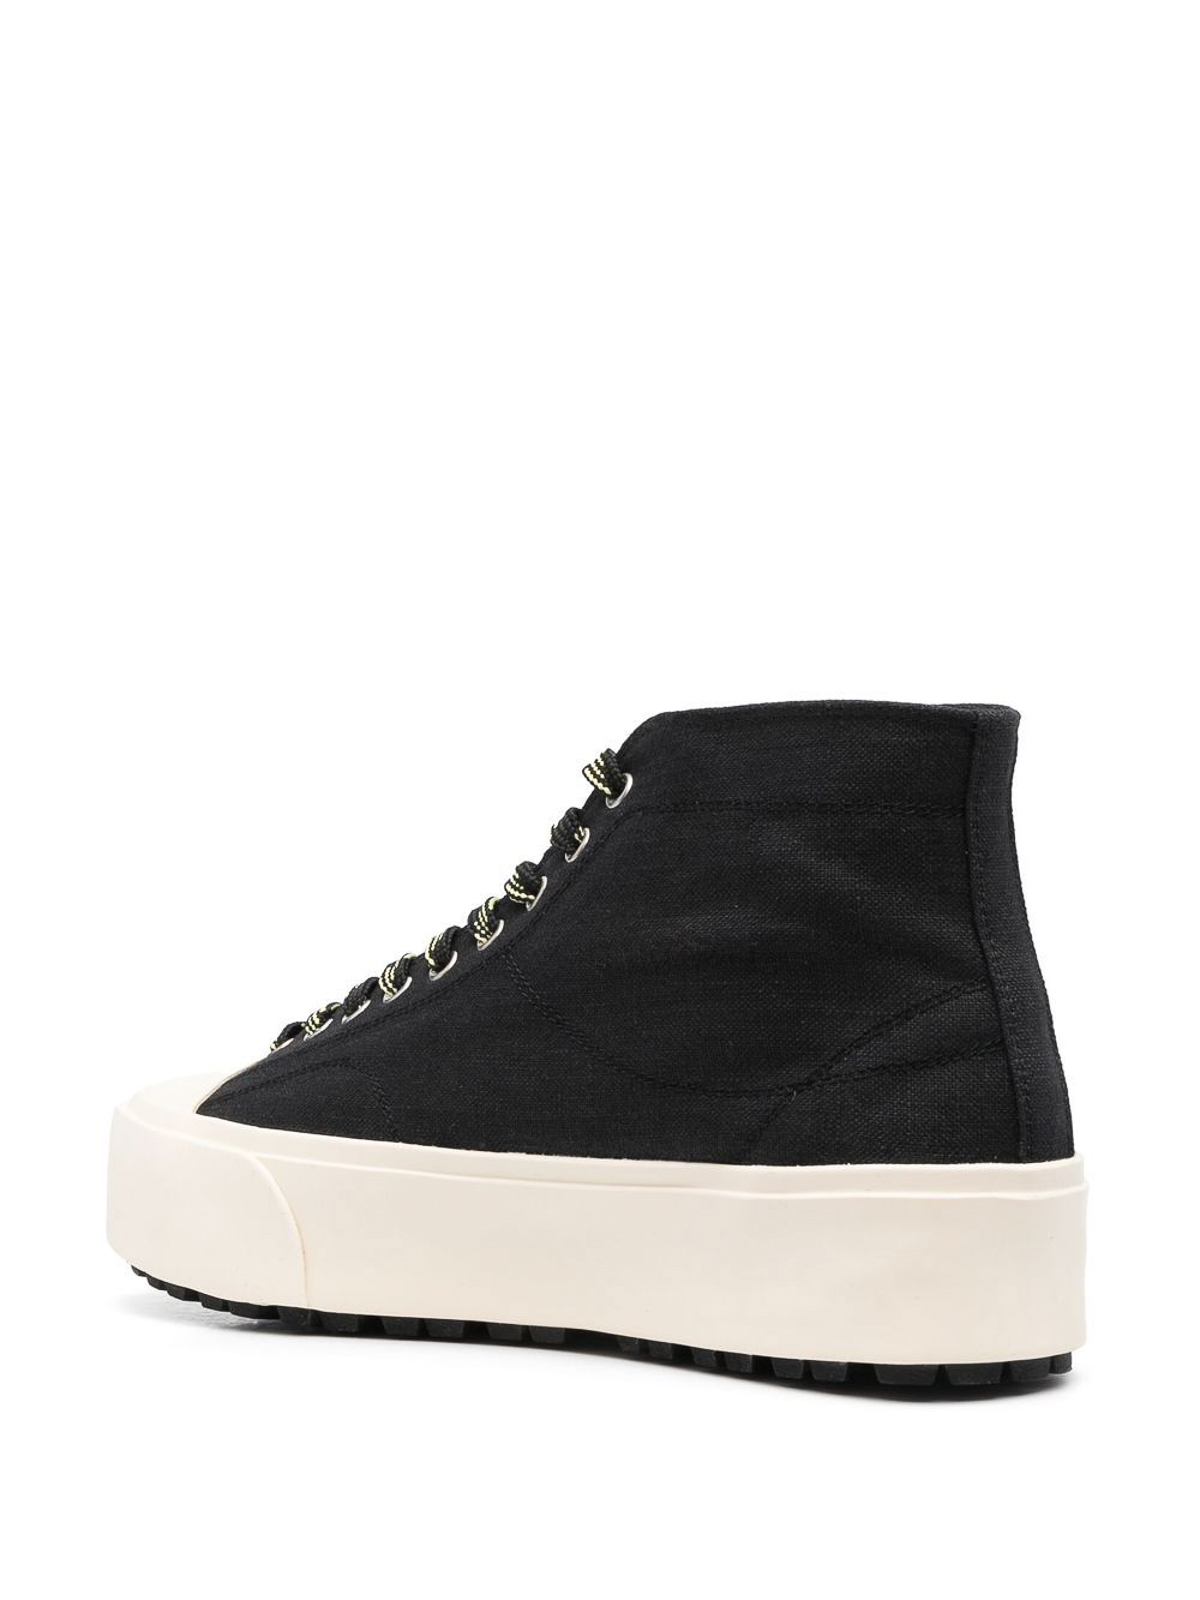 Shop Oamc Sneakers Black